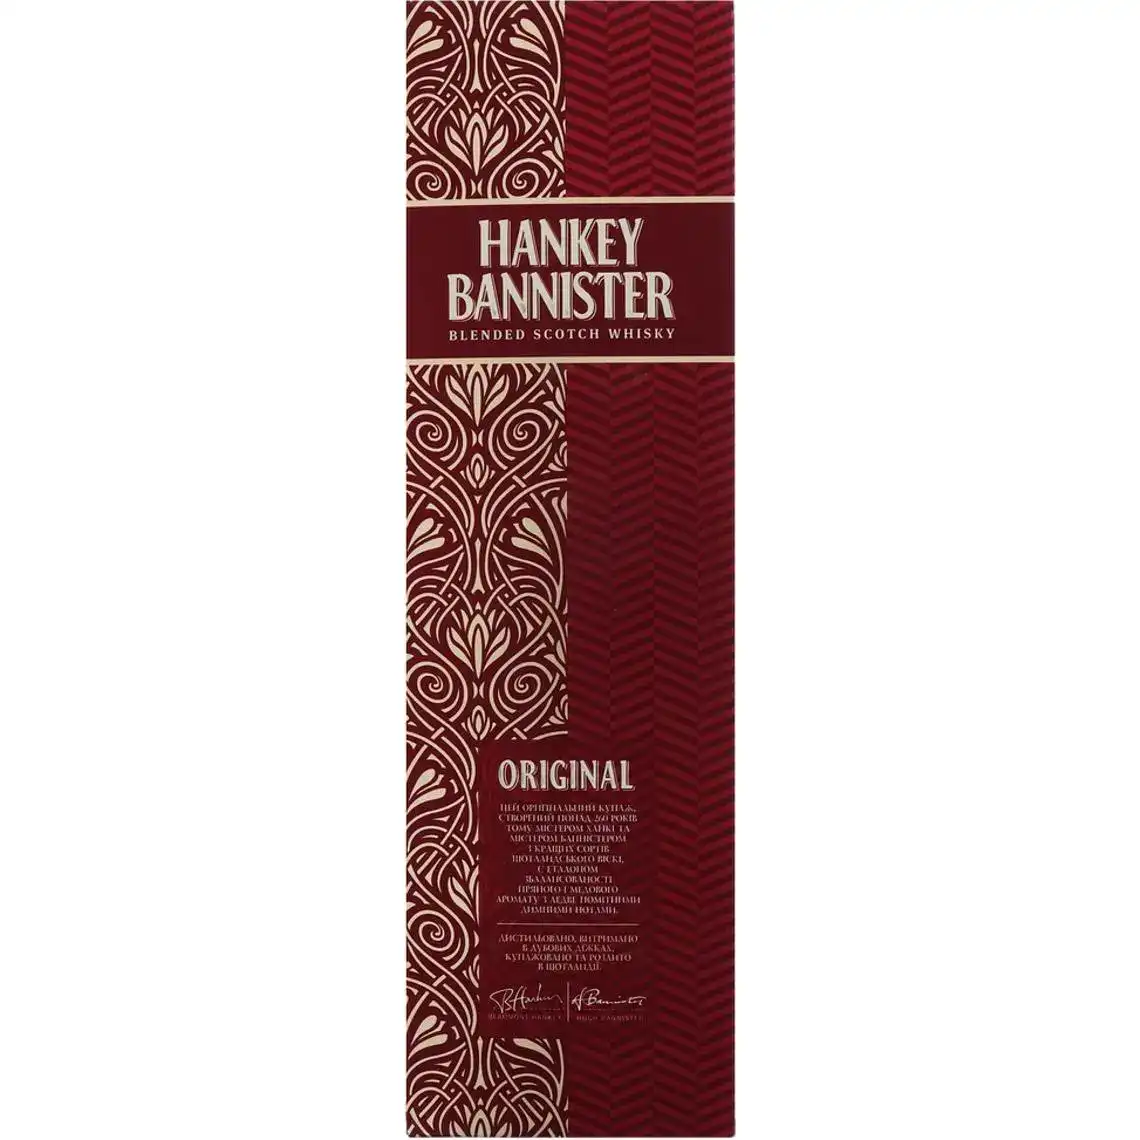 Віскі Hankey Bannister Original купажований 3 роки витримки 40% 1 л